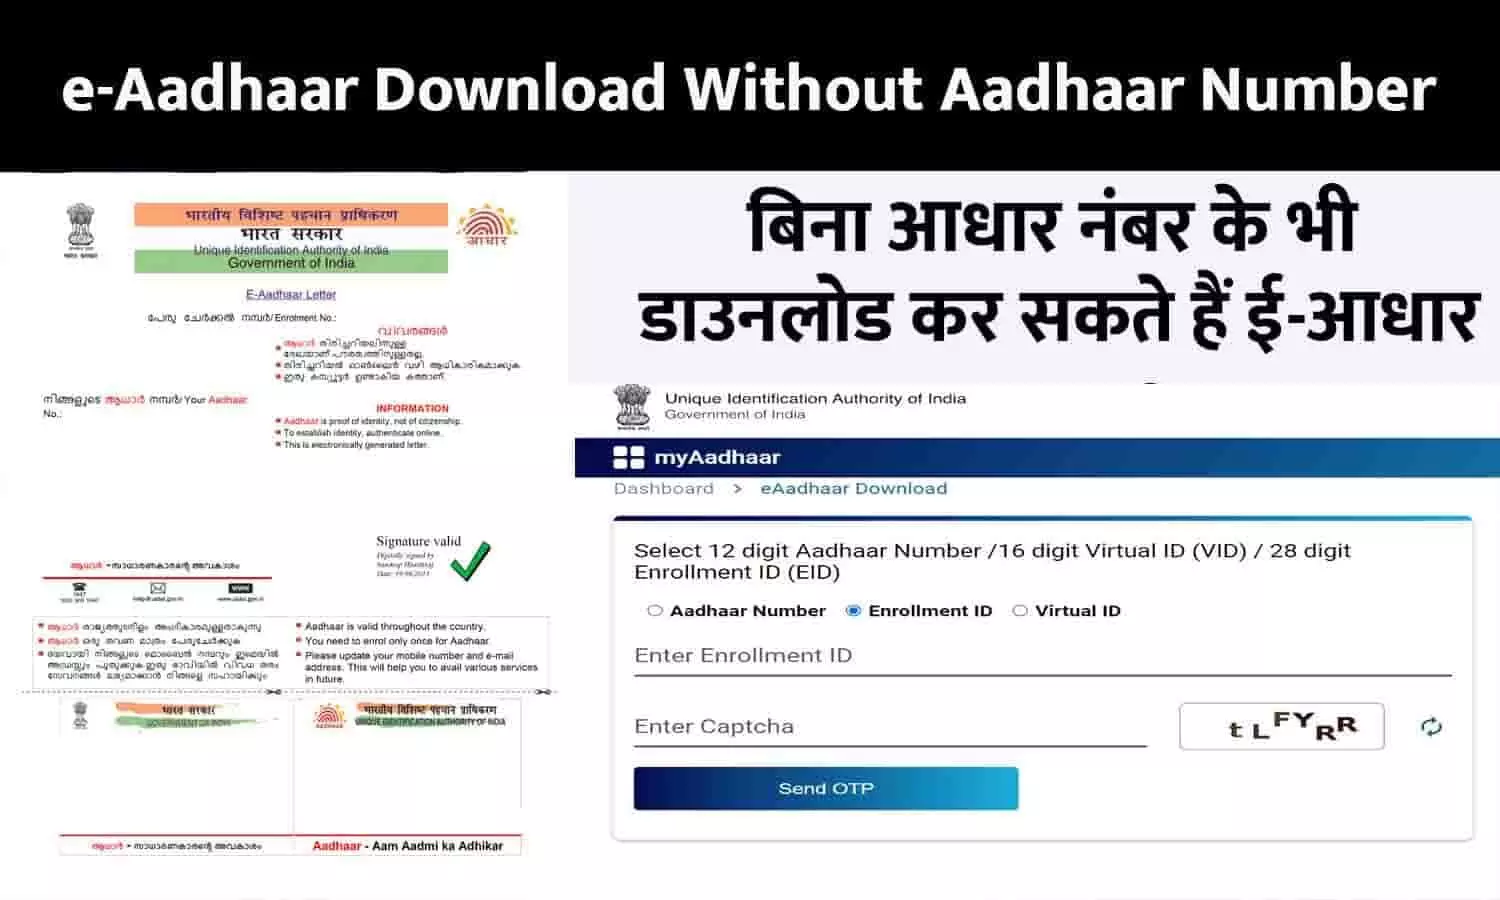 e-Aadhaar Download Without Aadhaar Number: बिना आधार नंबर के भी डाउनलोड कर सकते हैं ई-आधार, नई प्रोसेस जारी